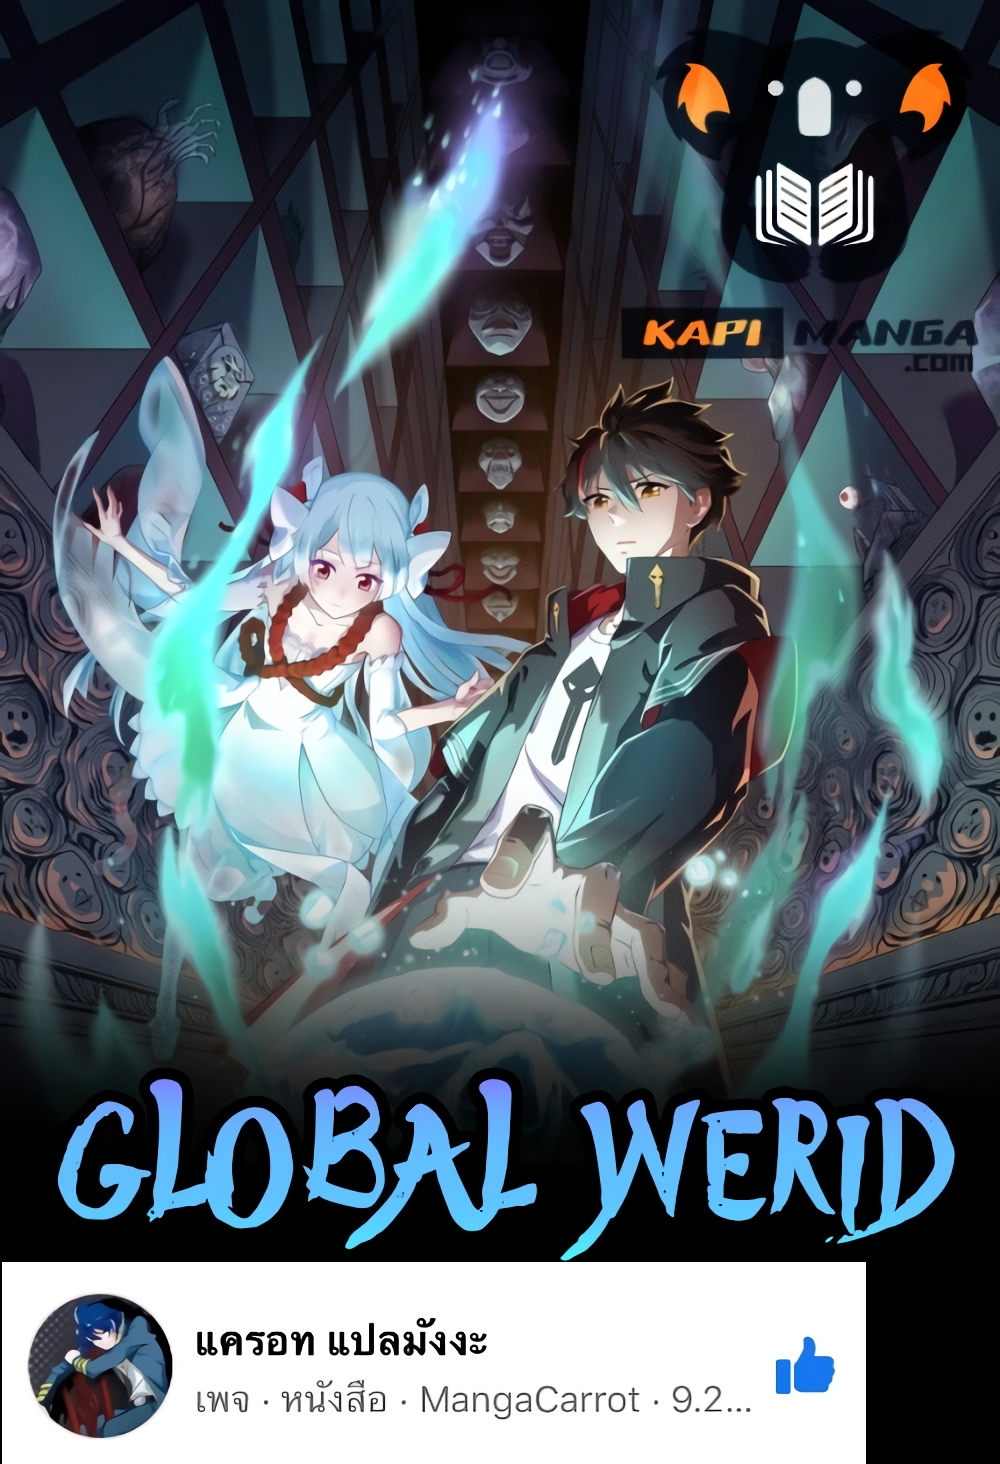 Global Weird 1 (1)